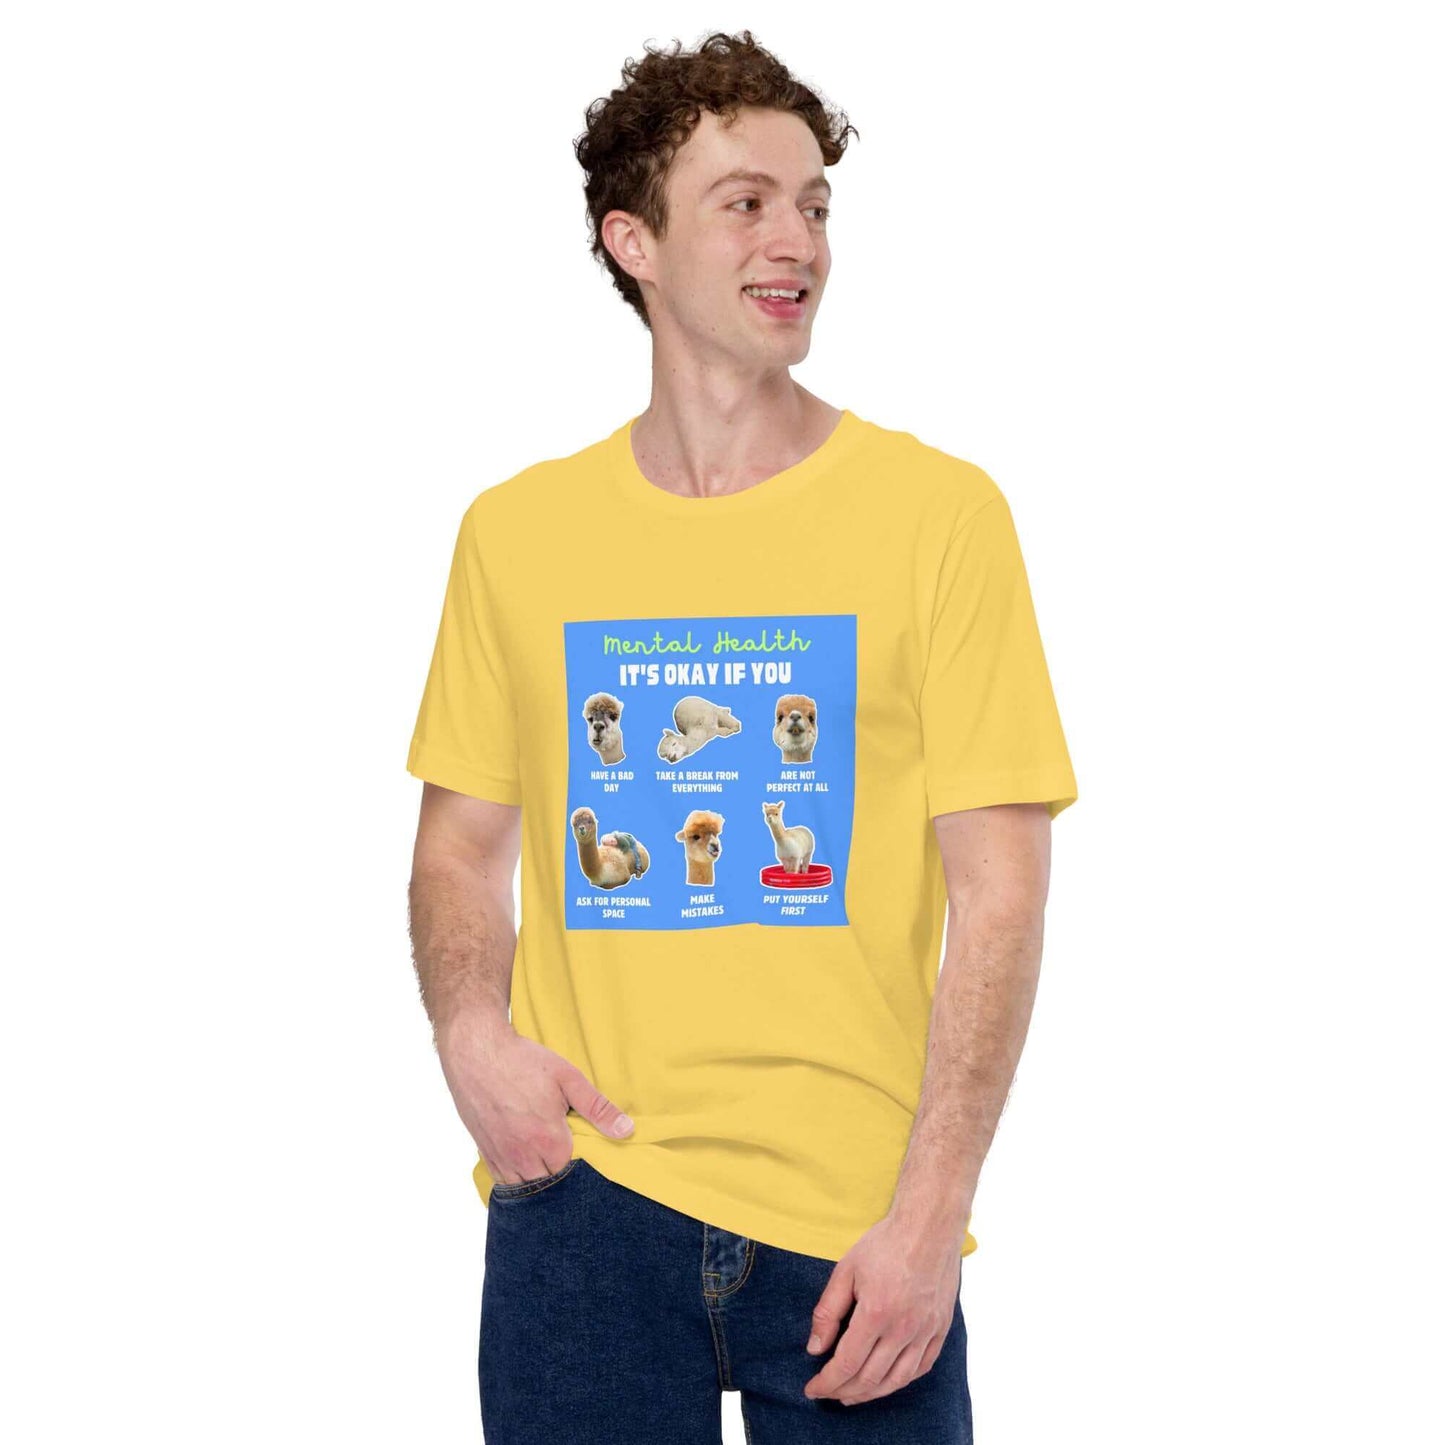 Kaufe unser Alpaka Motiv T-Shirt und unterstütze Mental Health Projekte mit jedem Verkauf.